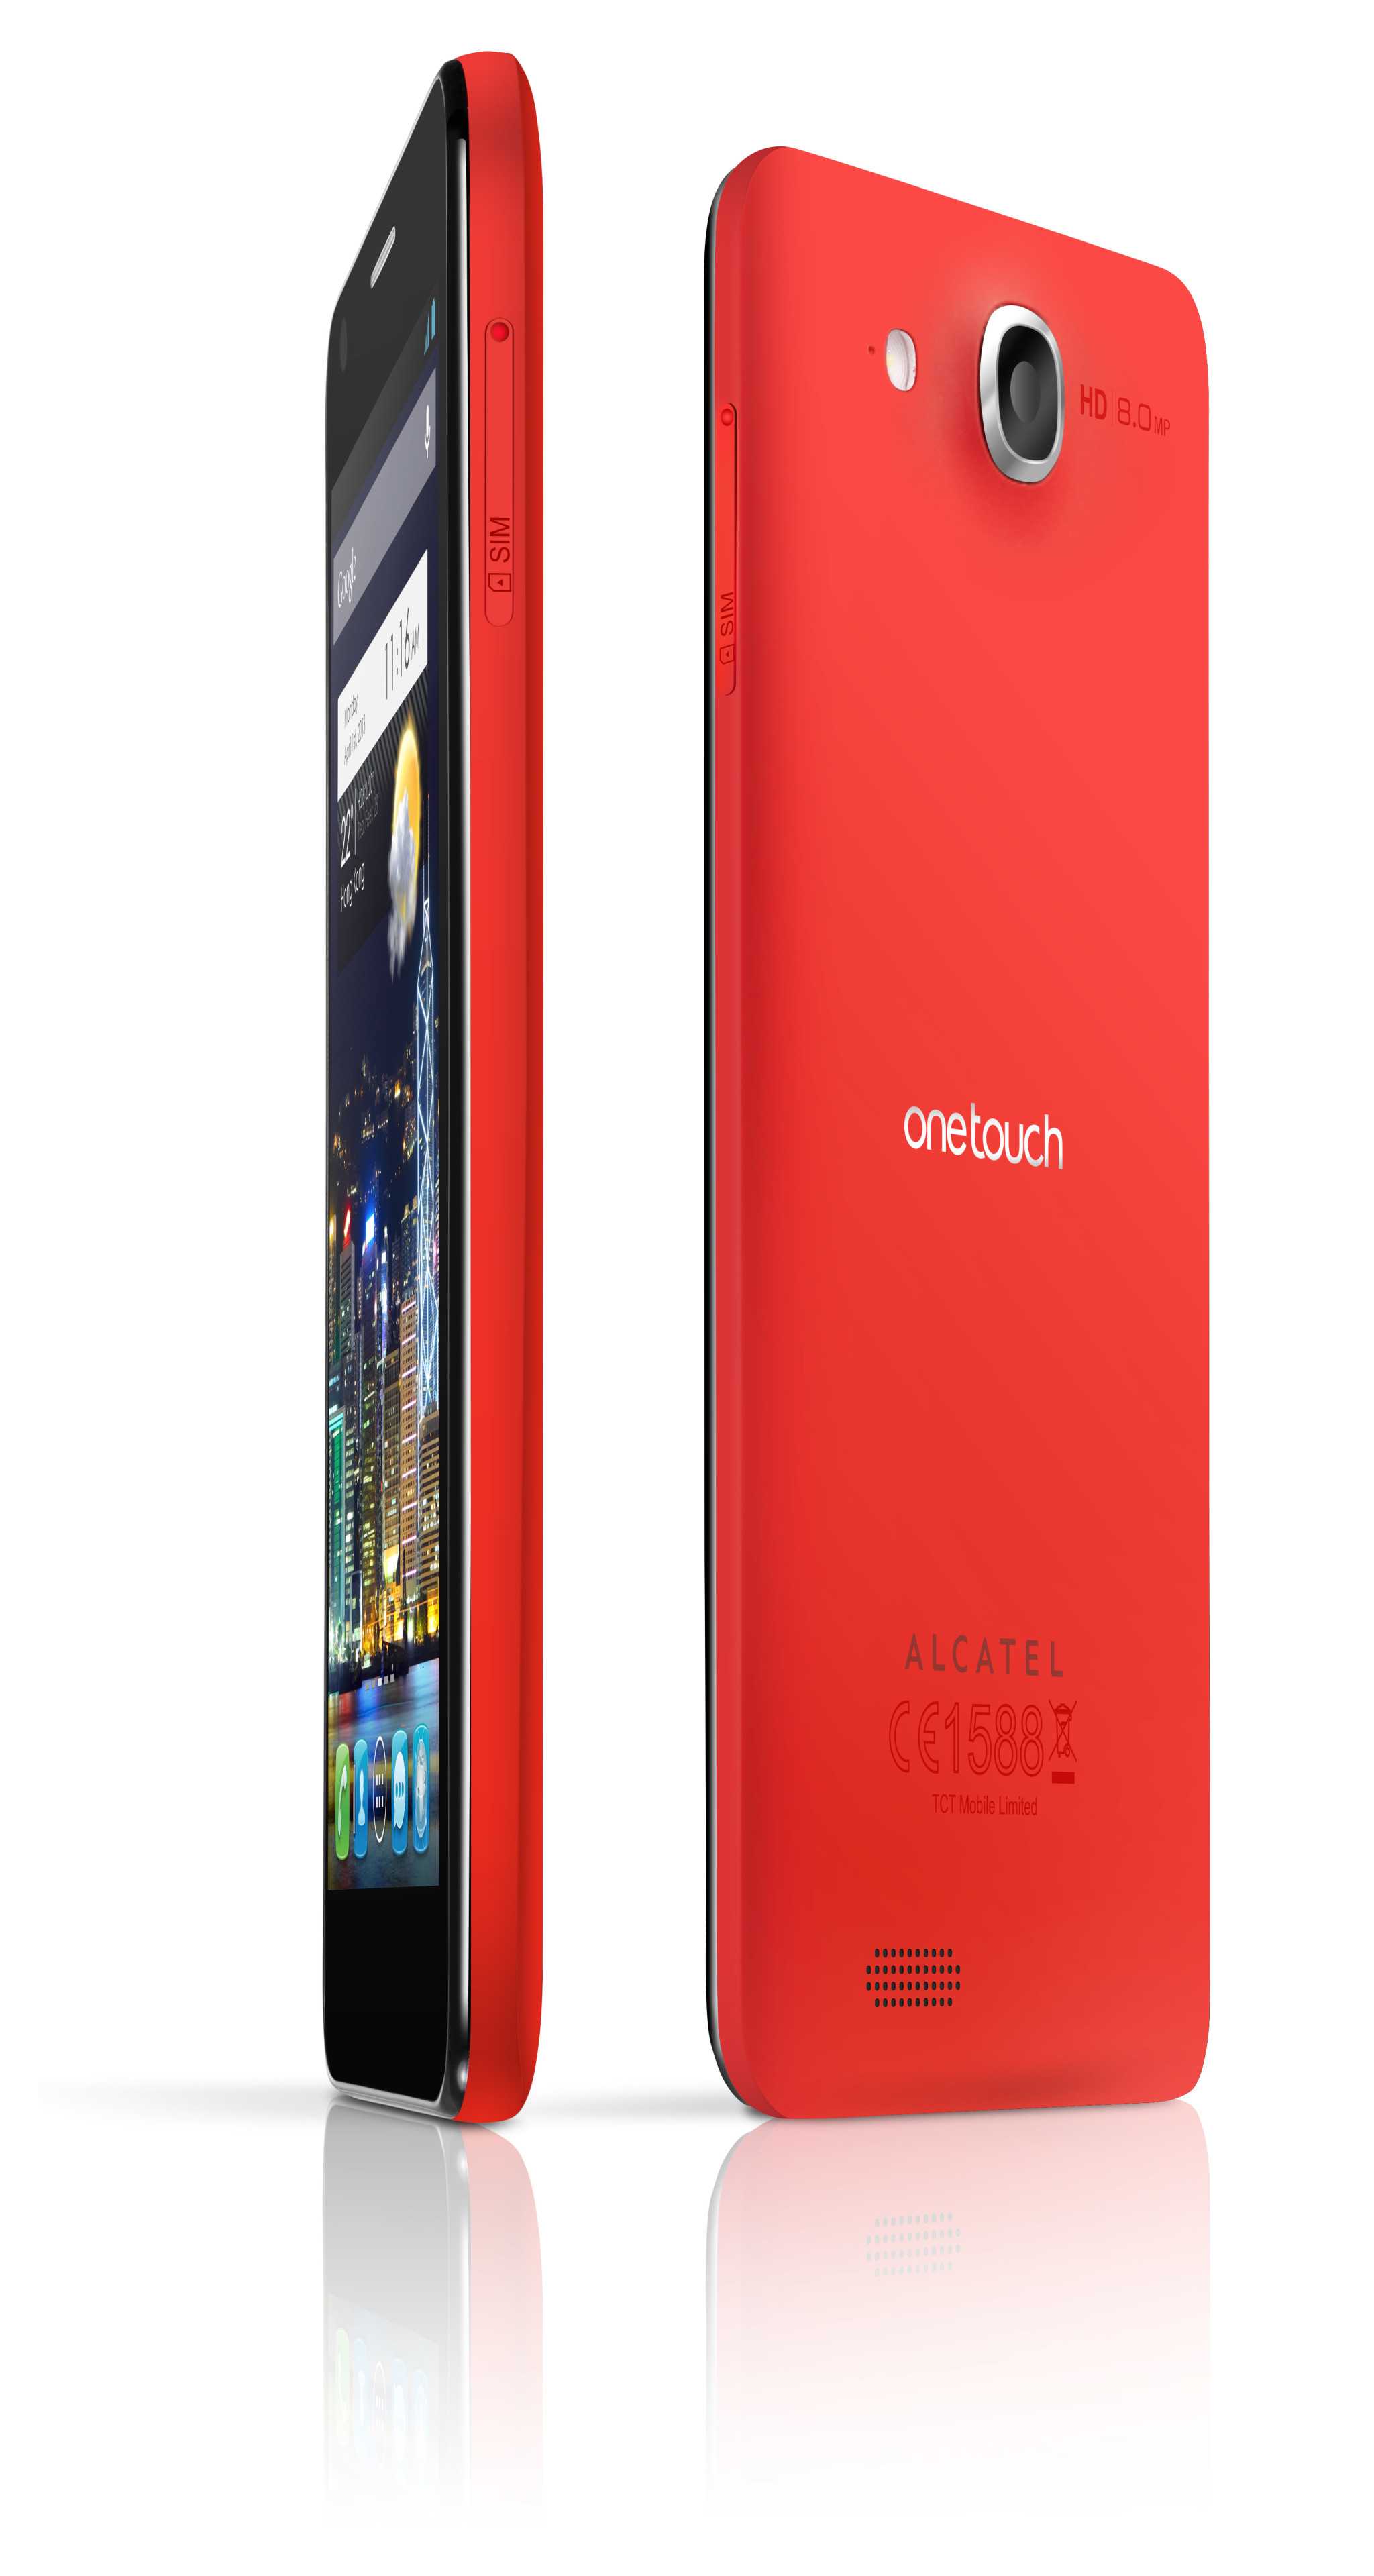 Alcatel onetouch idol 6030d (черный) - купить , скидки, цена, отзывы, обзор, характеристики - мобильные телефоны